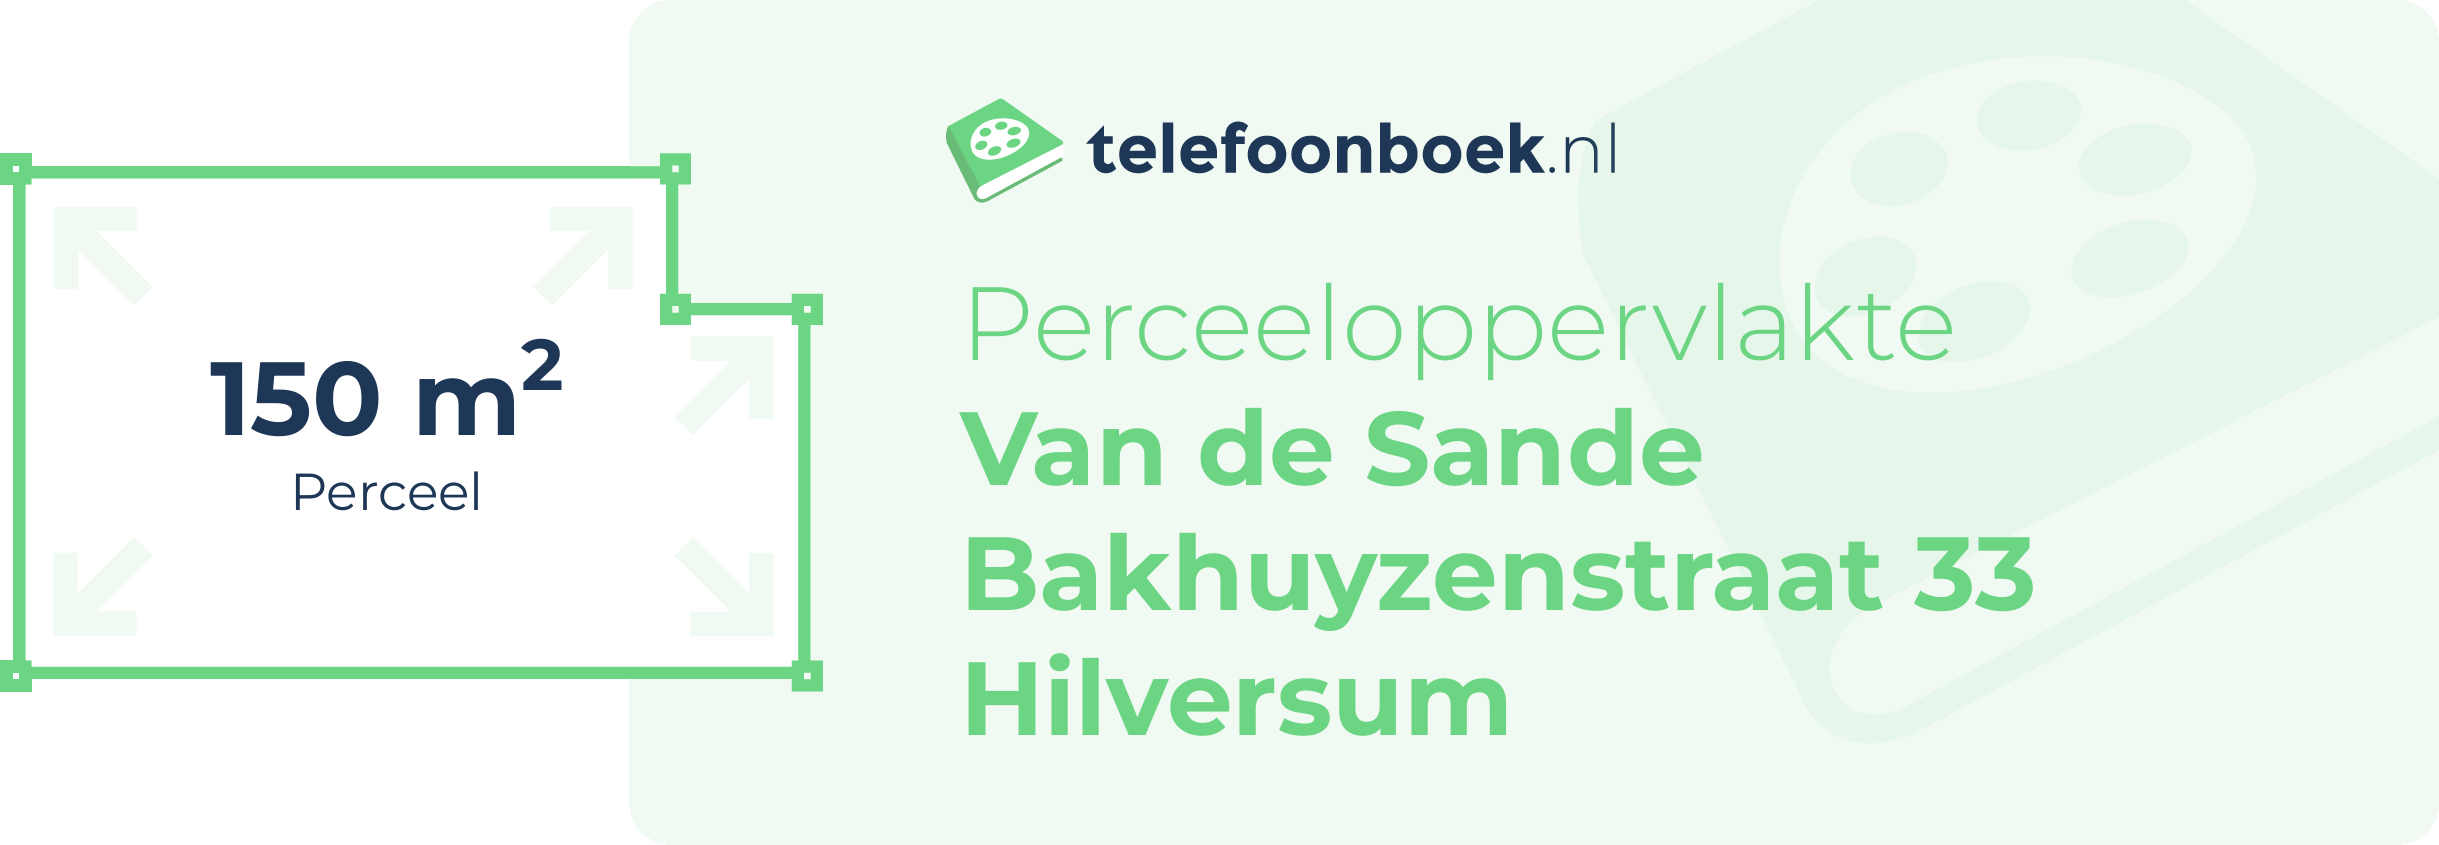 Perceeloppervlakte Van De Sande Bakhuyzenstraat 33 Hilversum